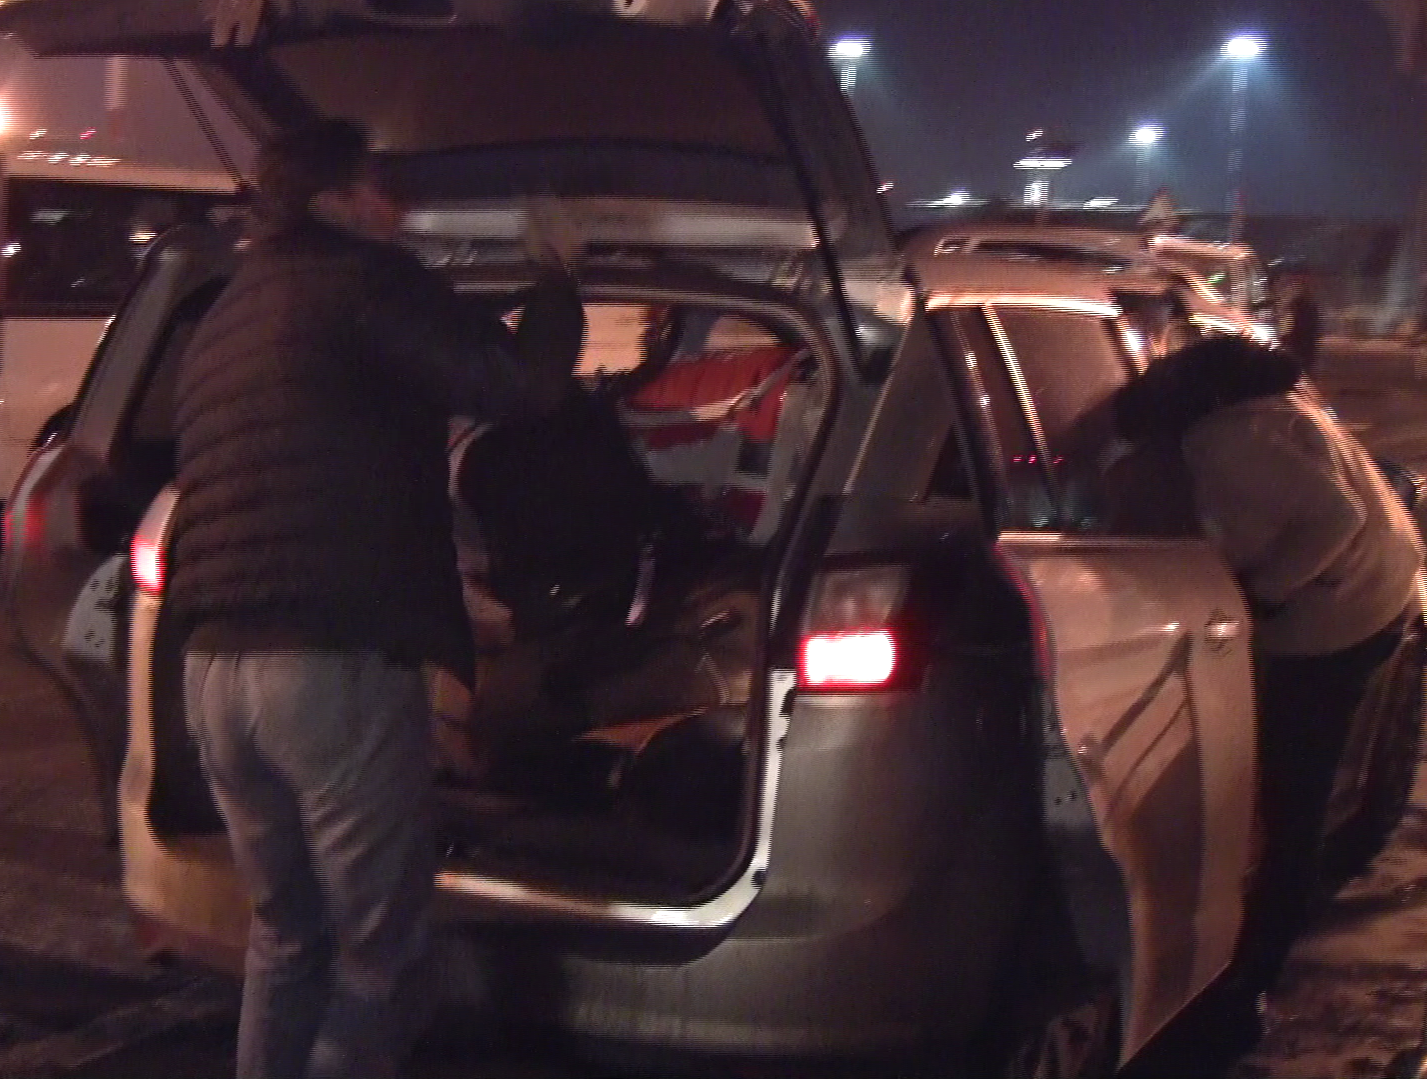 Cei doi au inghesuit cu greu bagajele in portbagajul masinii care ii astepta la aeroport